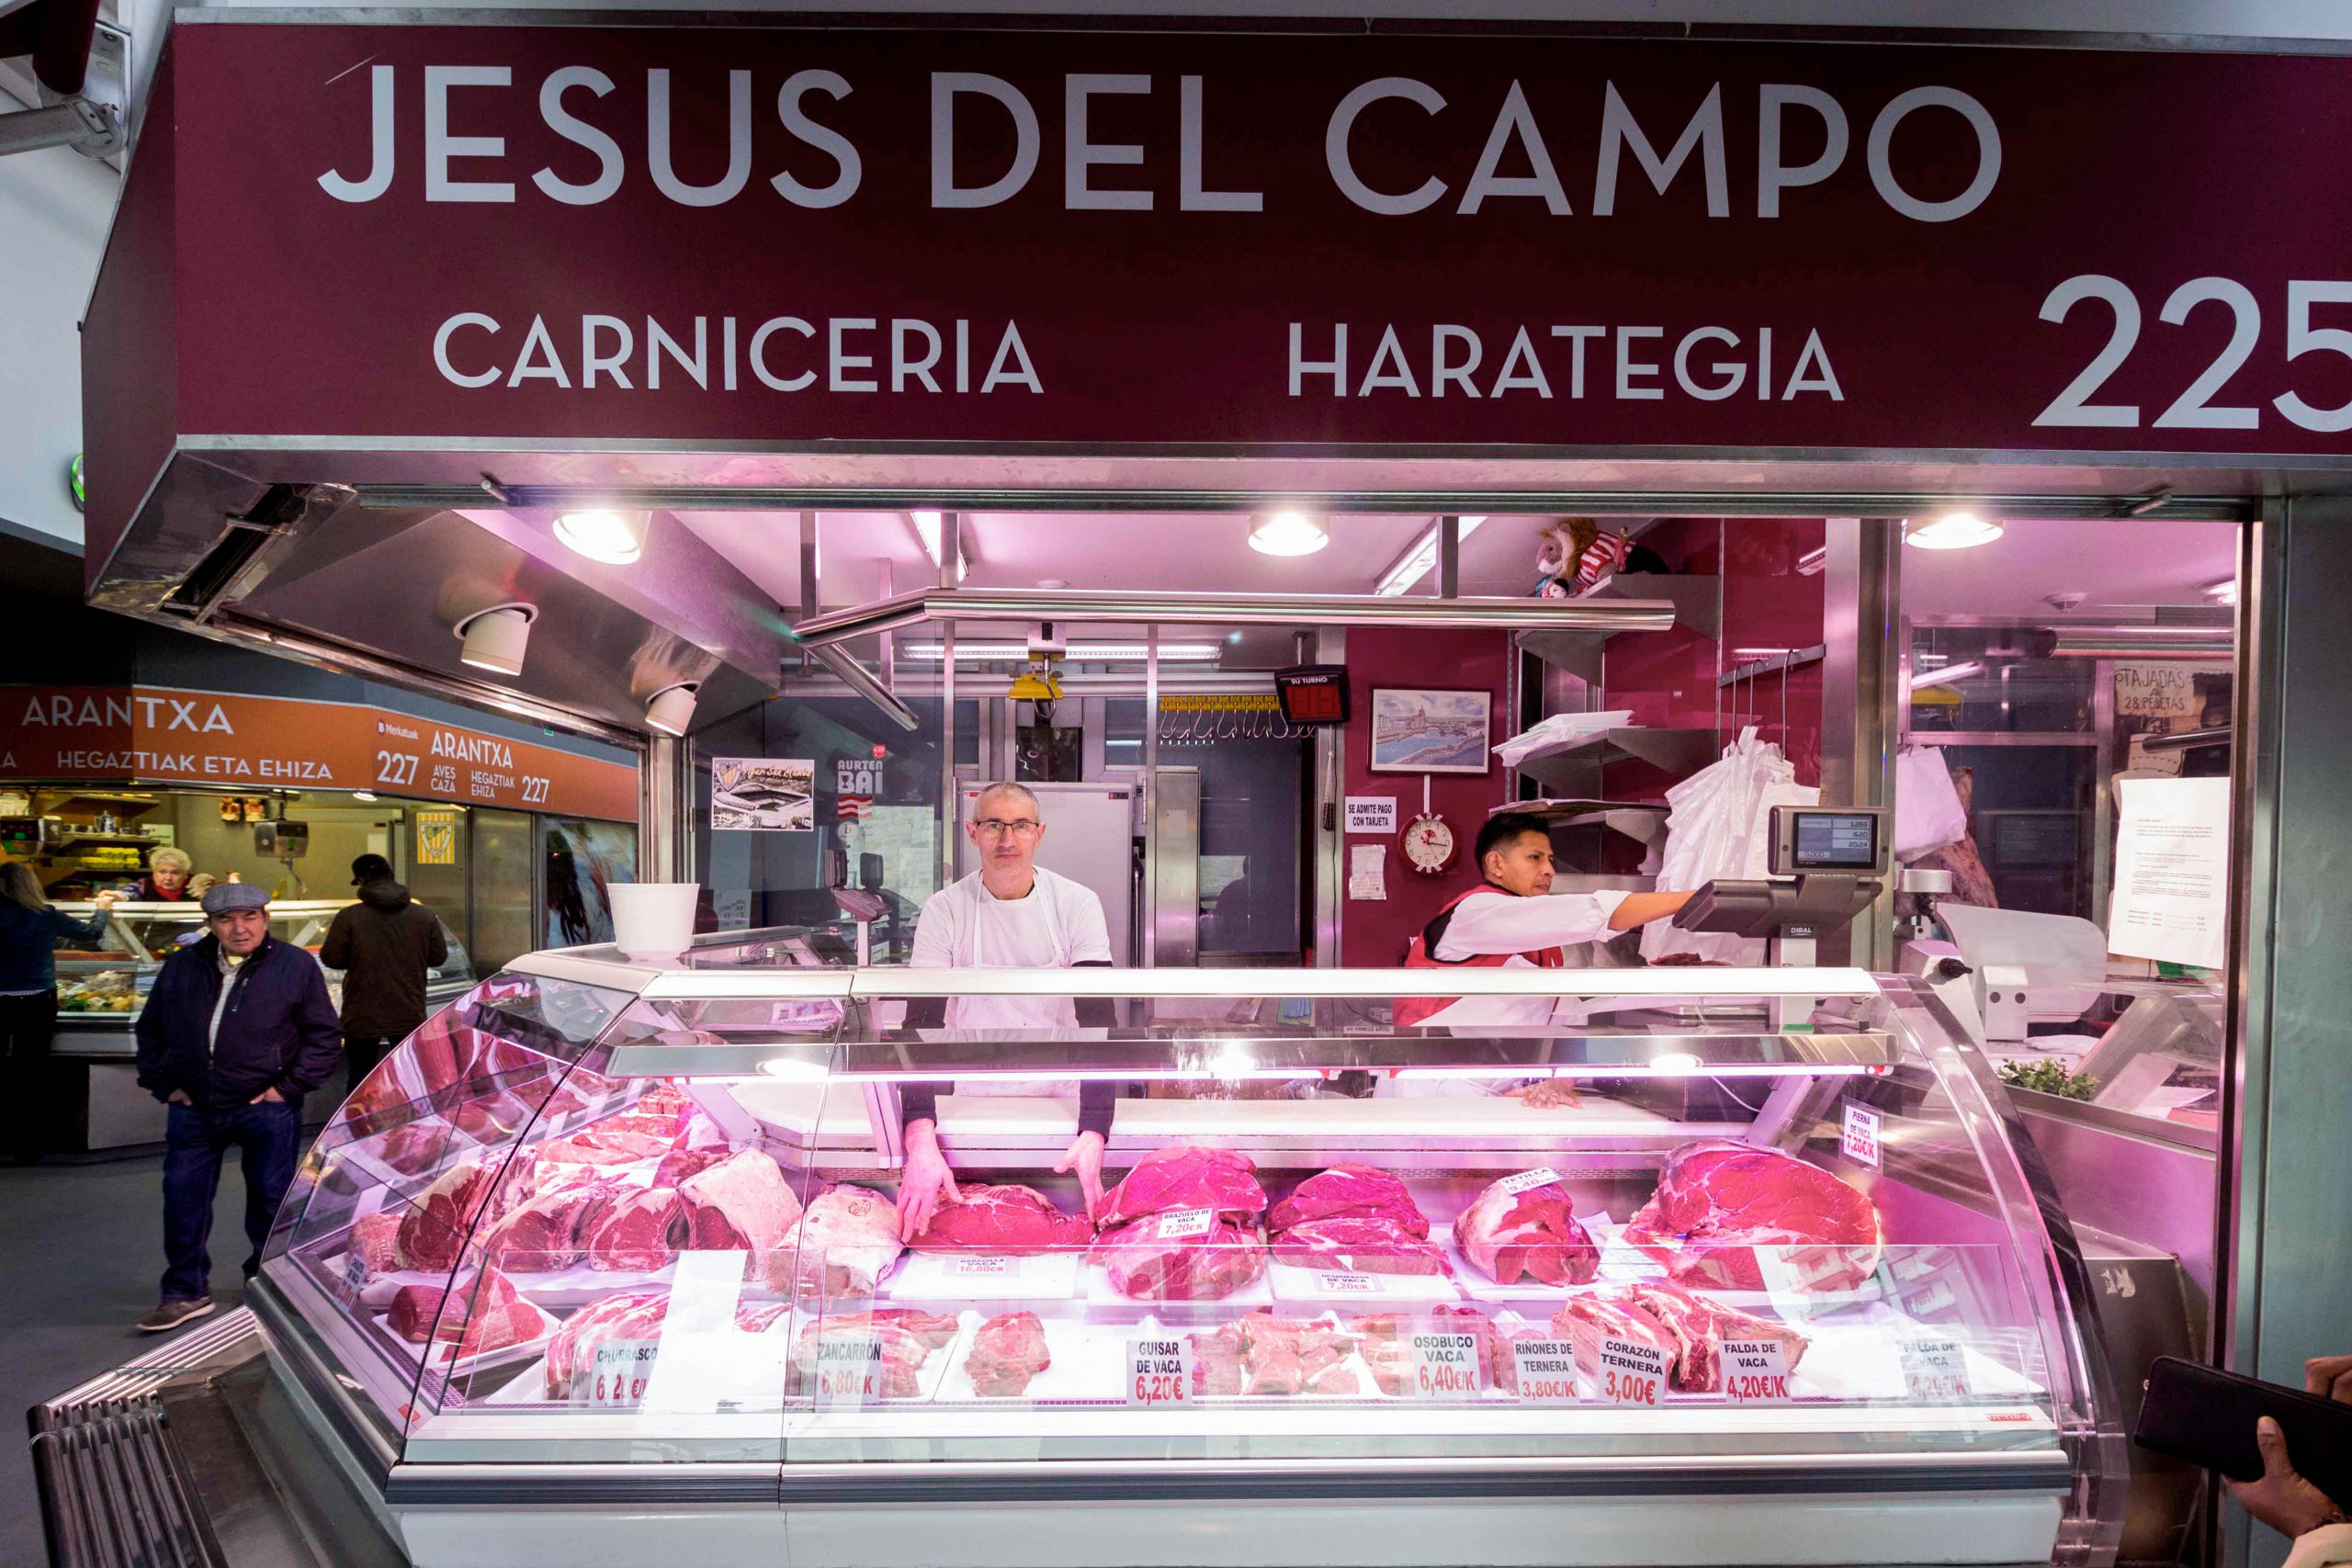 Carnicería Jesus del Campo